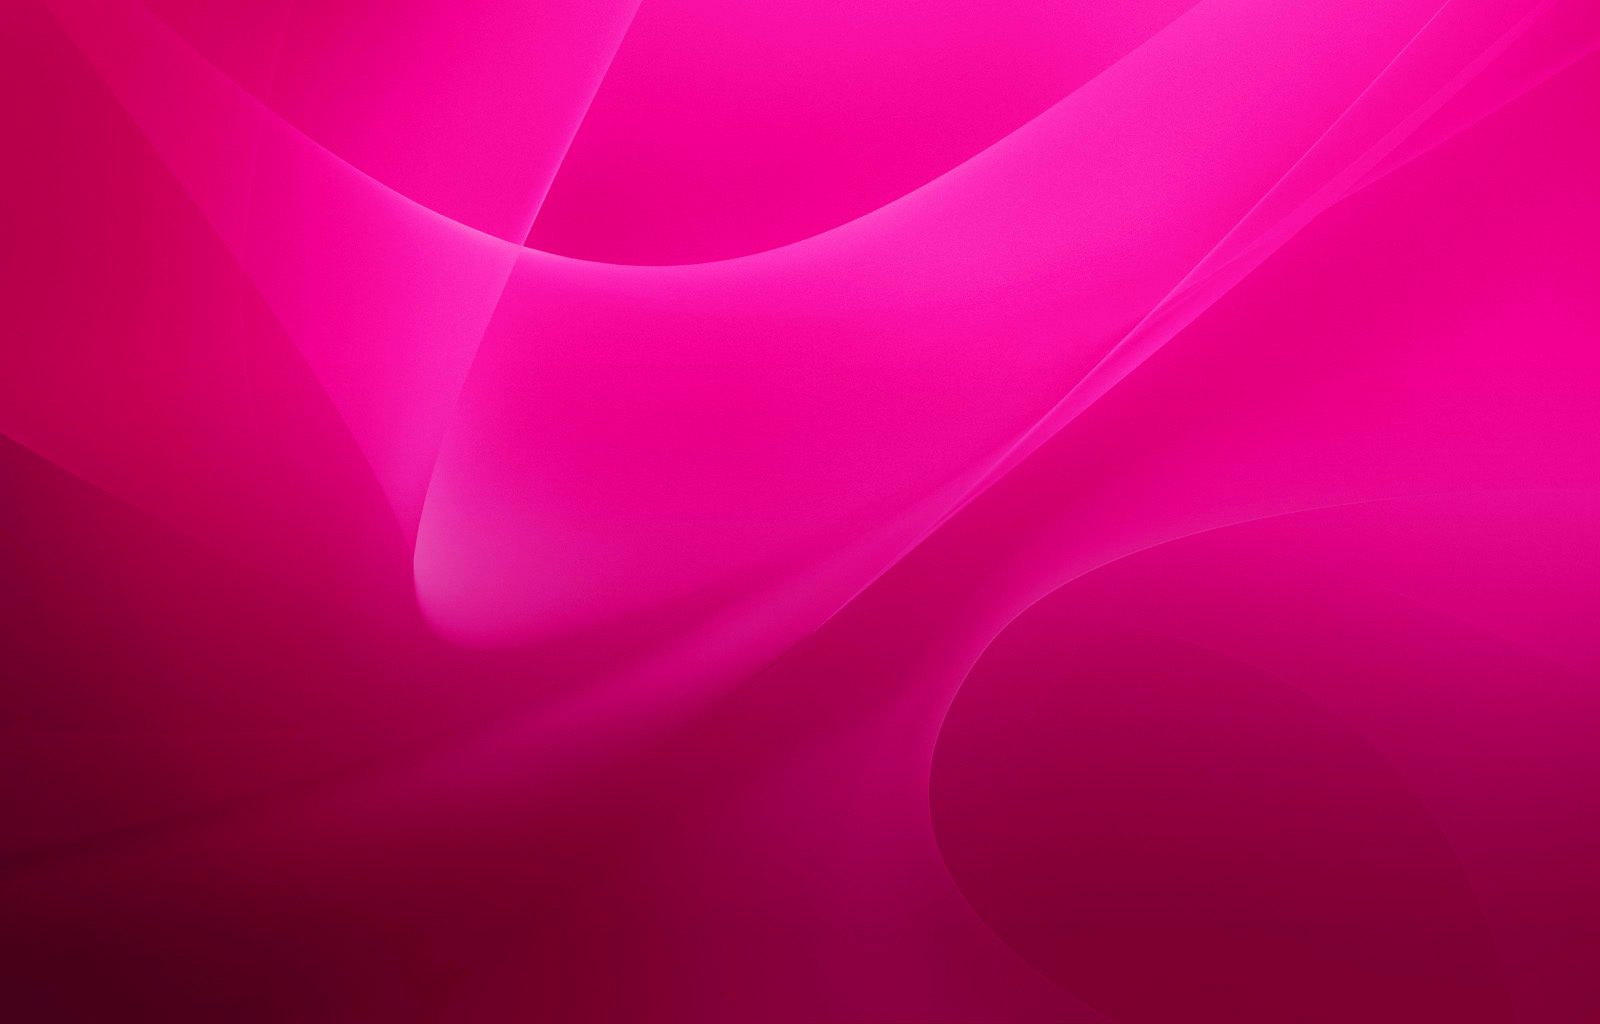 Hãy trang trí cho màn hình máy tính của bạn với hình nền màu hồng đẹp mắt và tải về nó hoàn toàn miễn phí! Đi kèm với kích thước 1600x1024, bạn sẽ có thể thưởng thức cảnh quan tuyệt đẹp nhất của màu sắc này.